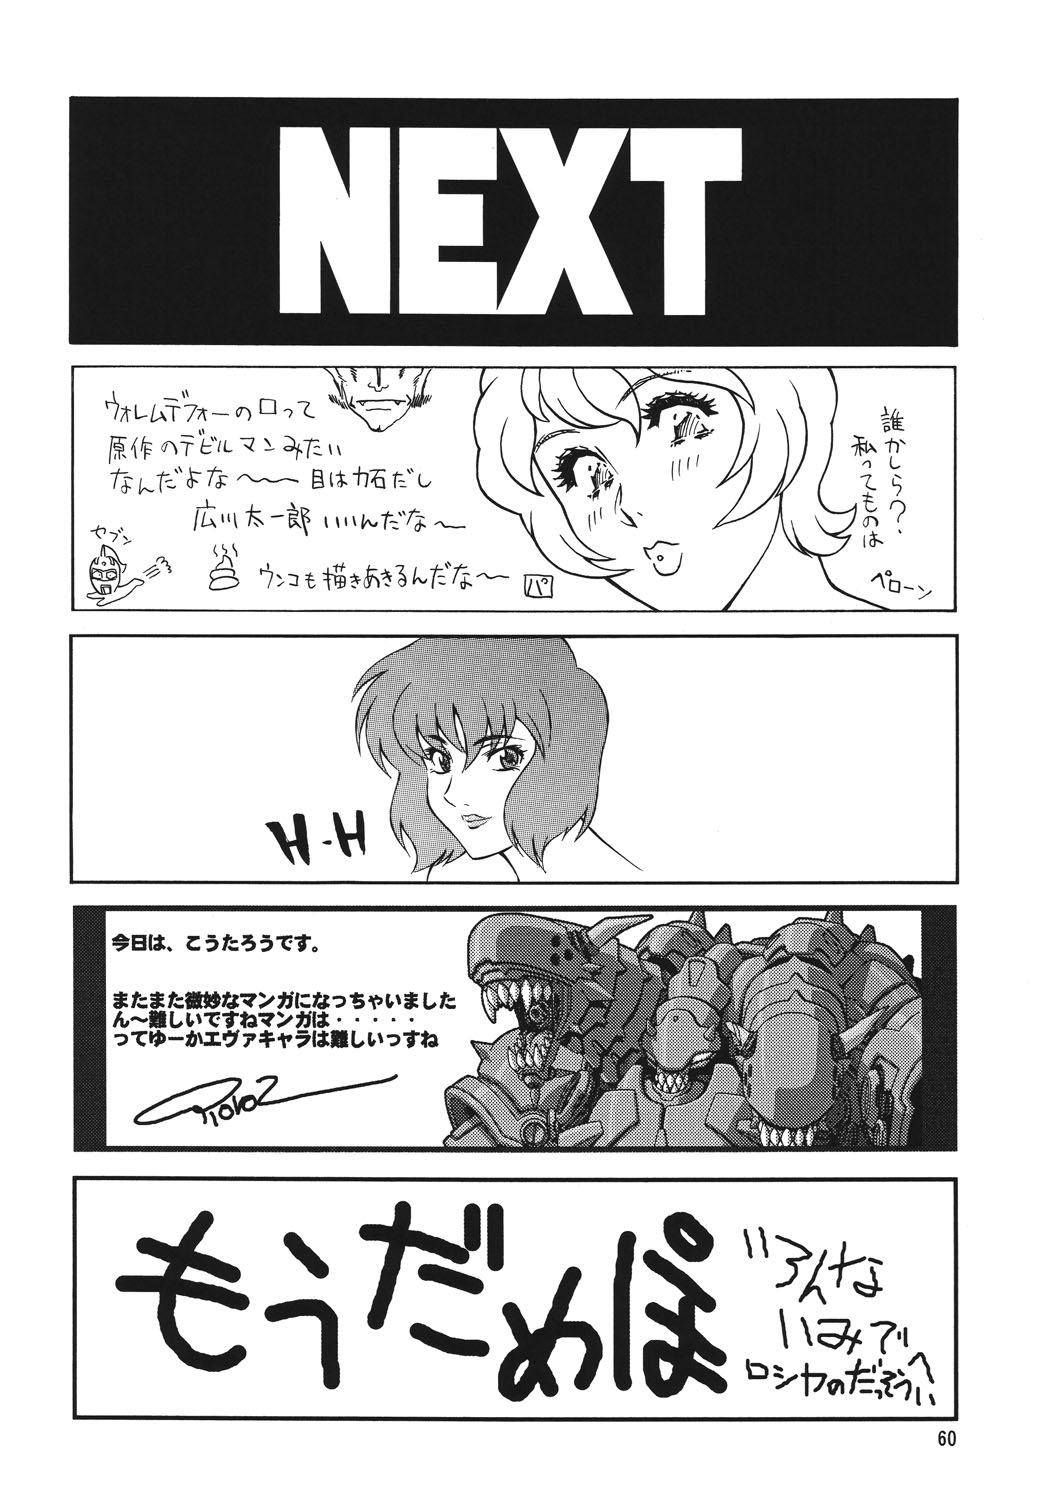 [Rippadou] NEXT Climax Magazine 16 (Neon Genesis Evangelion) [立派堂] NEXT Climax Magazine 16 (新世紀エヴァンゲリオン)